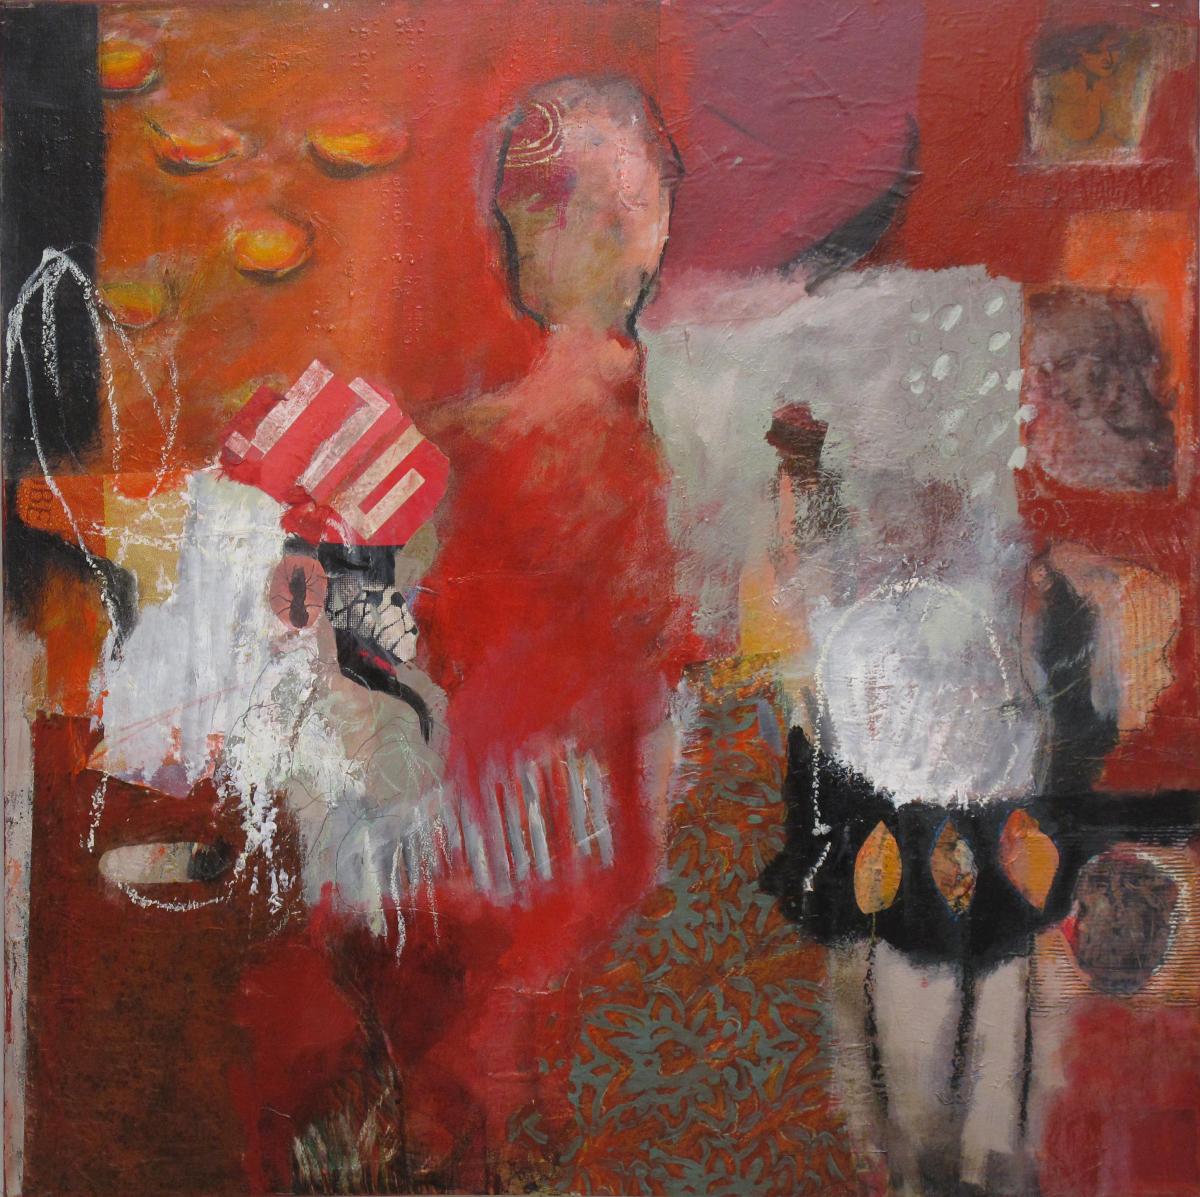 Göttinnen IV, 2011, Acryl und Collage auf Leinwand, 100 x 100 cm